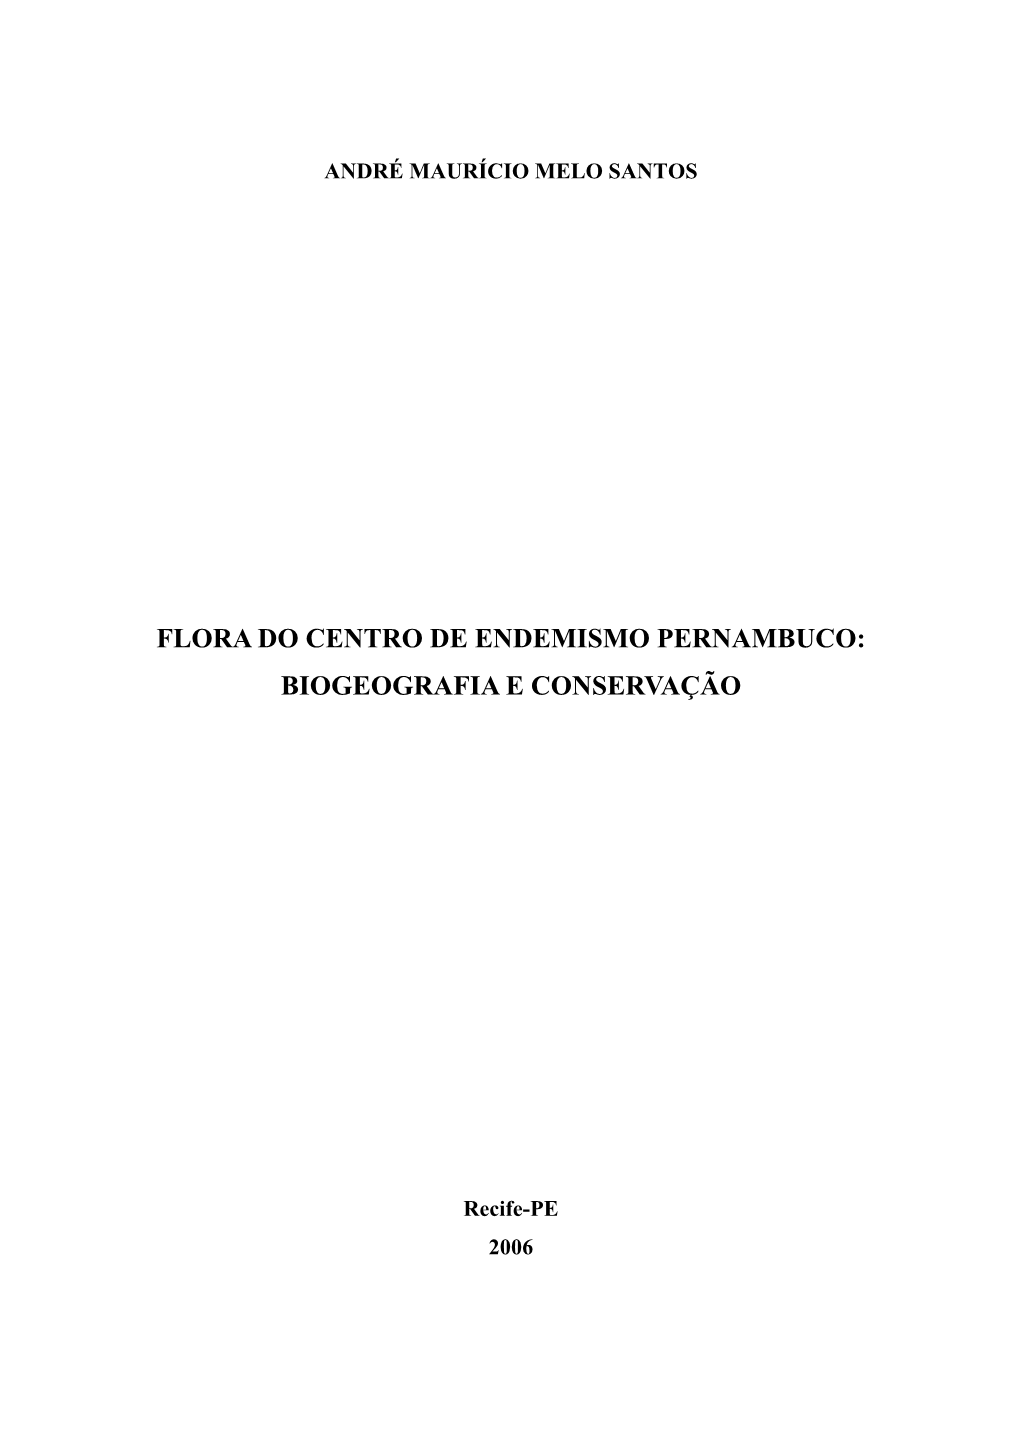 Flora Do Centro De Endemismo Pernambuco: Biogeografia E Conservação